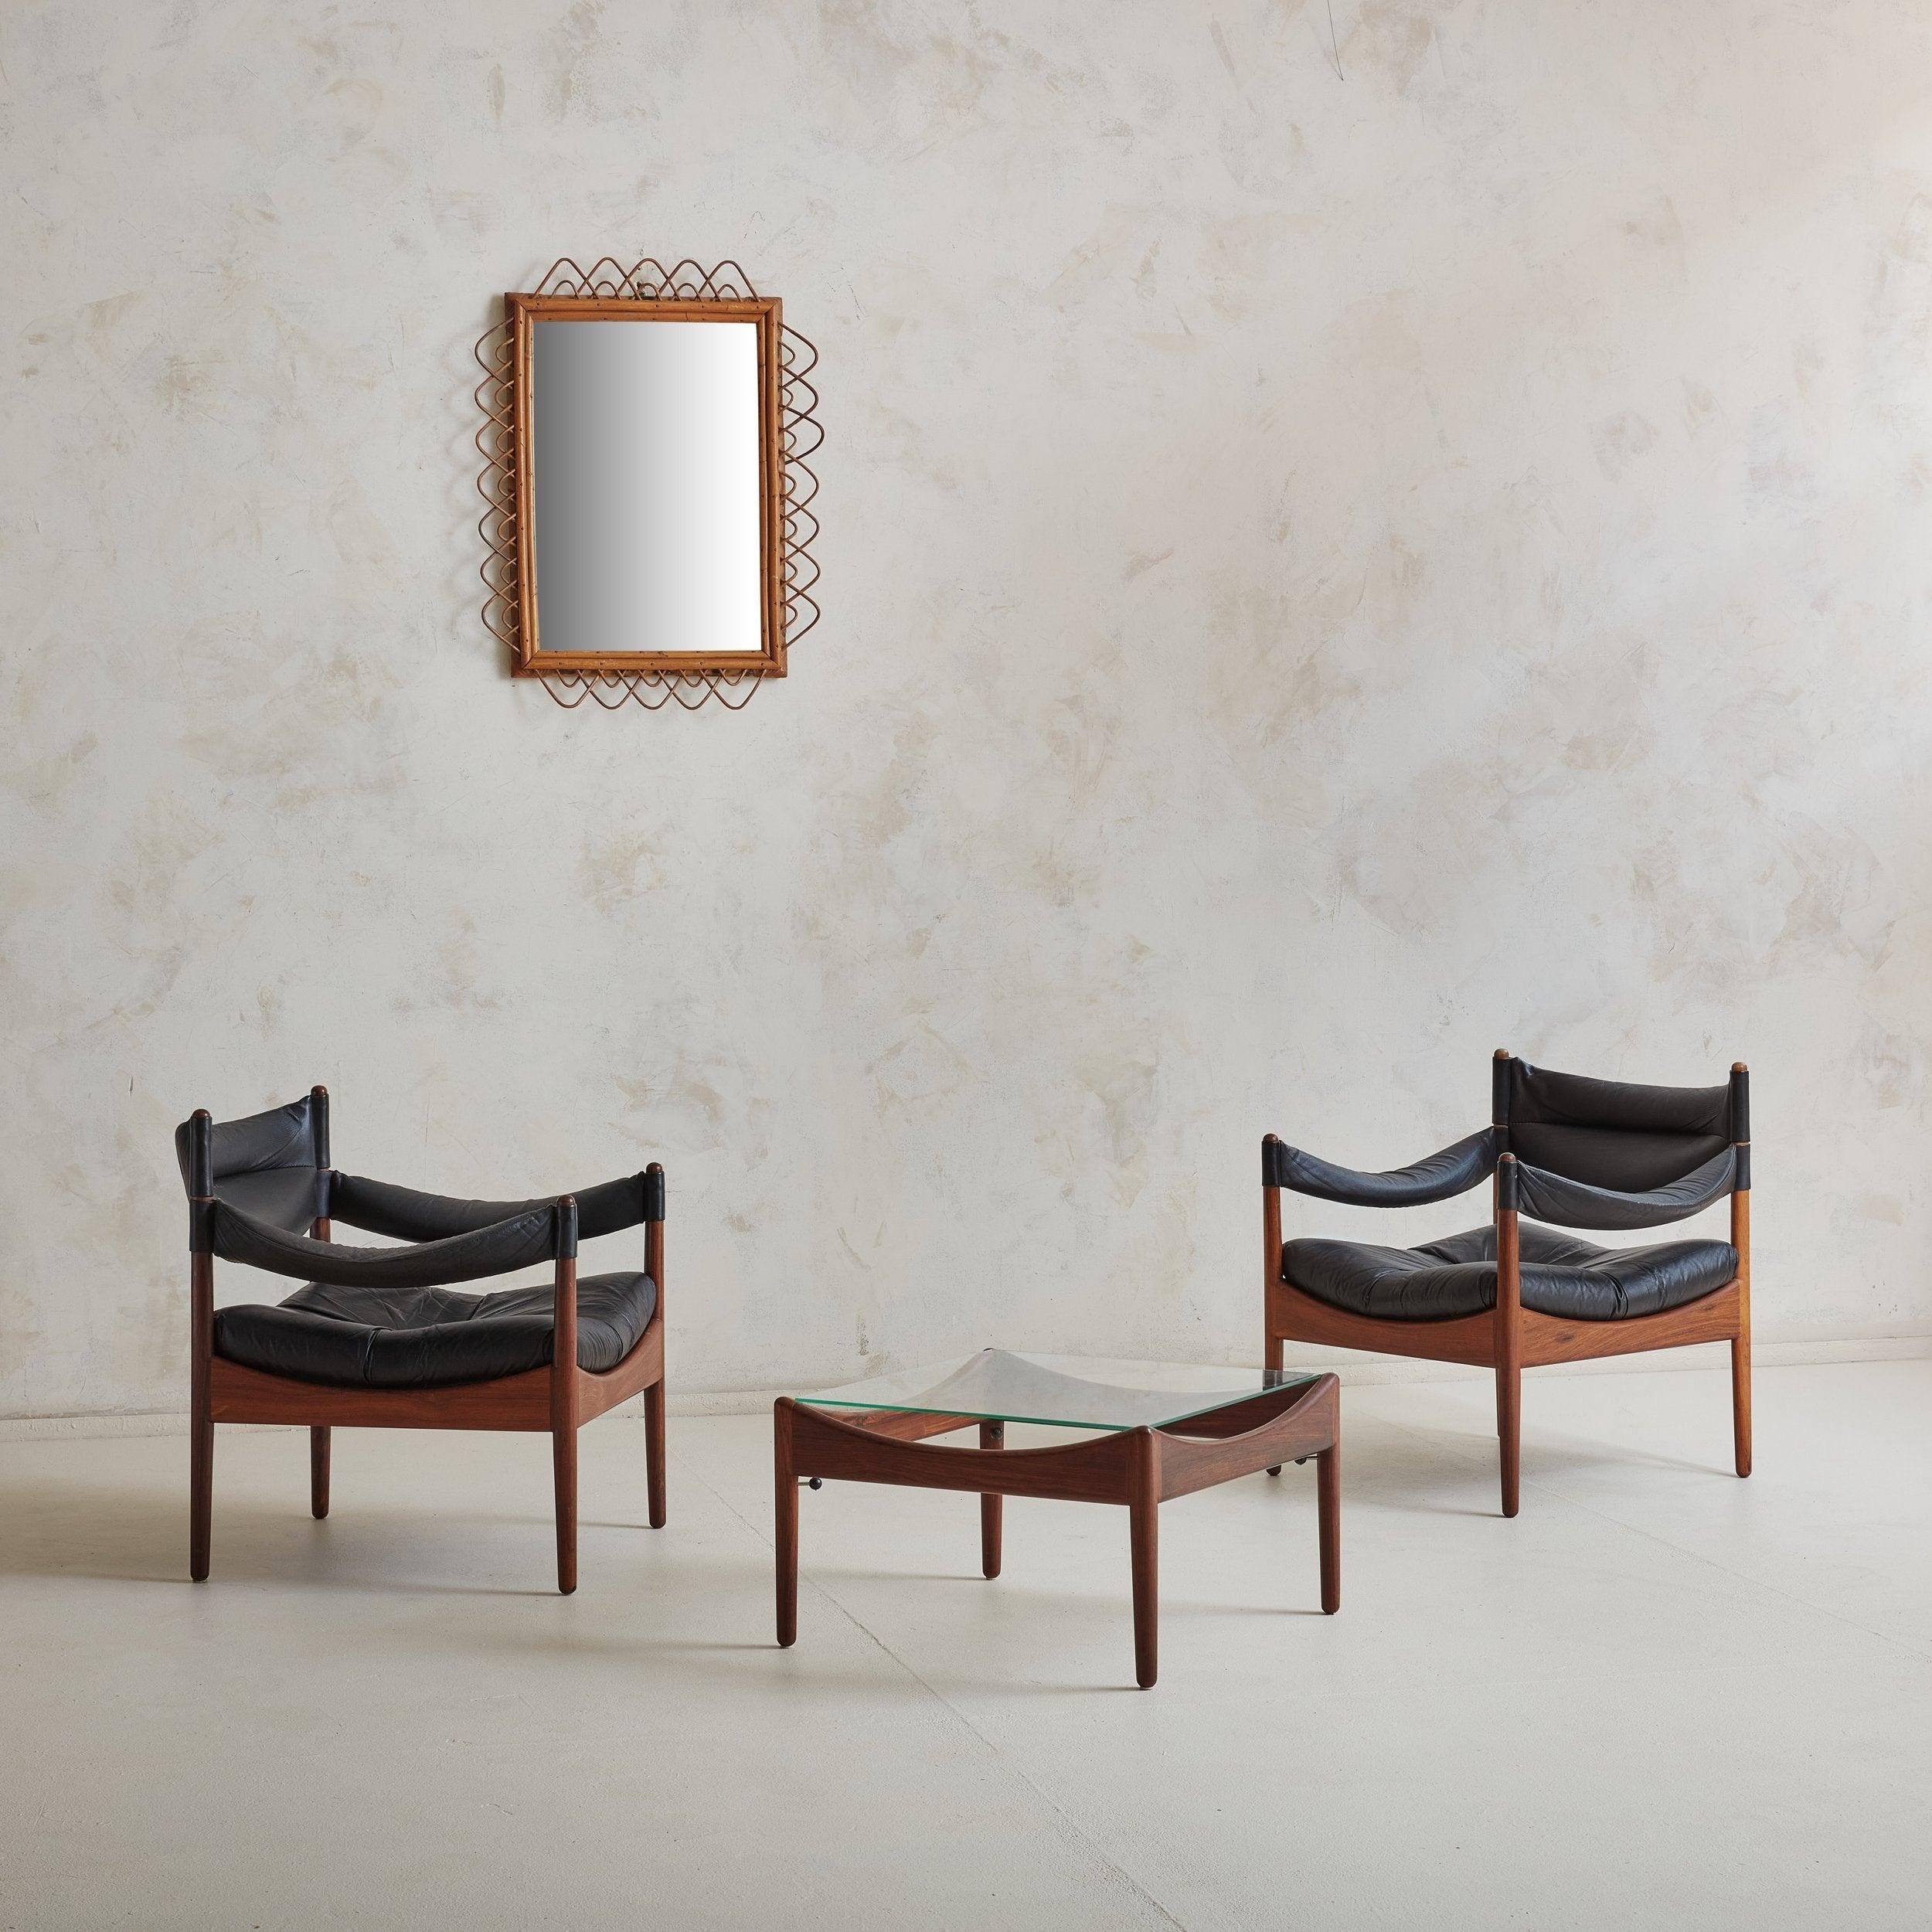 2 dänische moderne Sessel aus schwarzem Leder und passender Tisch aus der Modus-Serie, entworfen von Kristian Vedel für Willadsen Møbelfabrik. Dieses skandinavisch-moderne Set aus den 1960er Jahren zeichnet sich durch wunderschöne